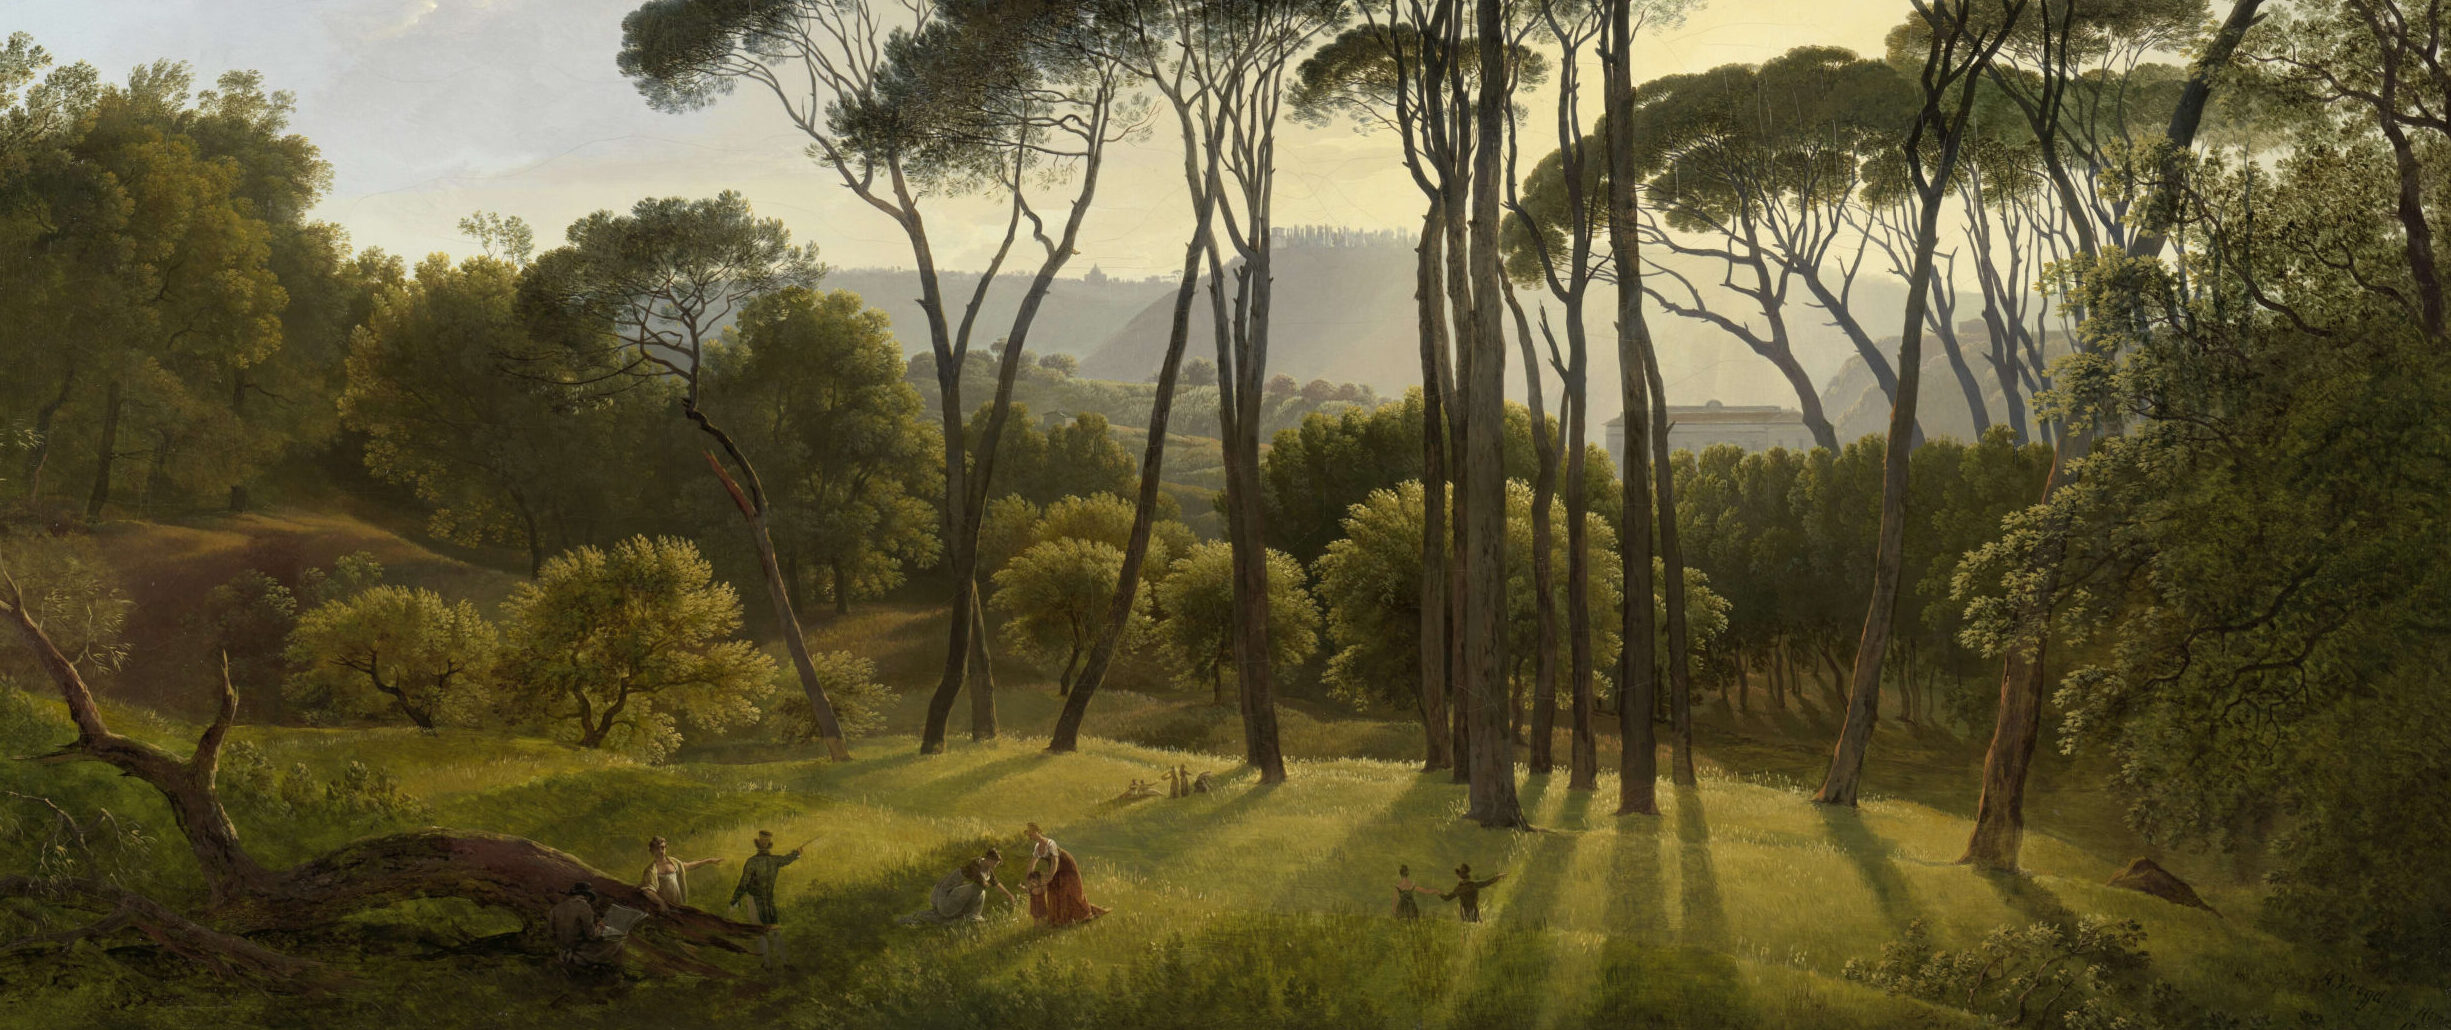 Dettaglio tratto da un dipinto di Hendrik Voogd raffigurante un paesaggio bucolico. Protagonisti assoluti sono gli alti pini che si stagliano al centro della scena.